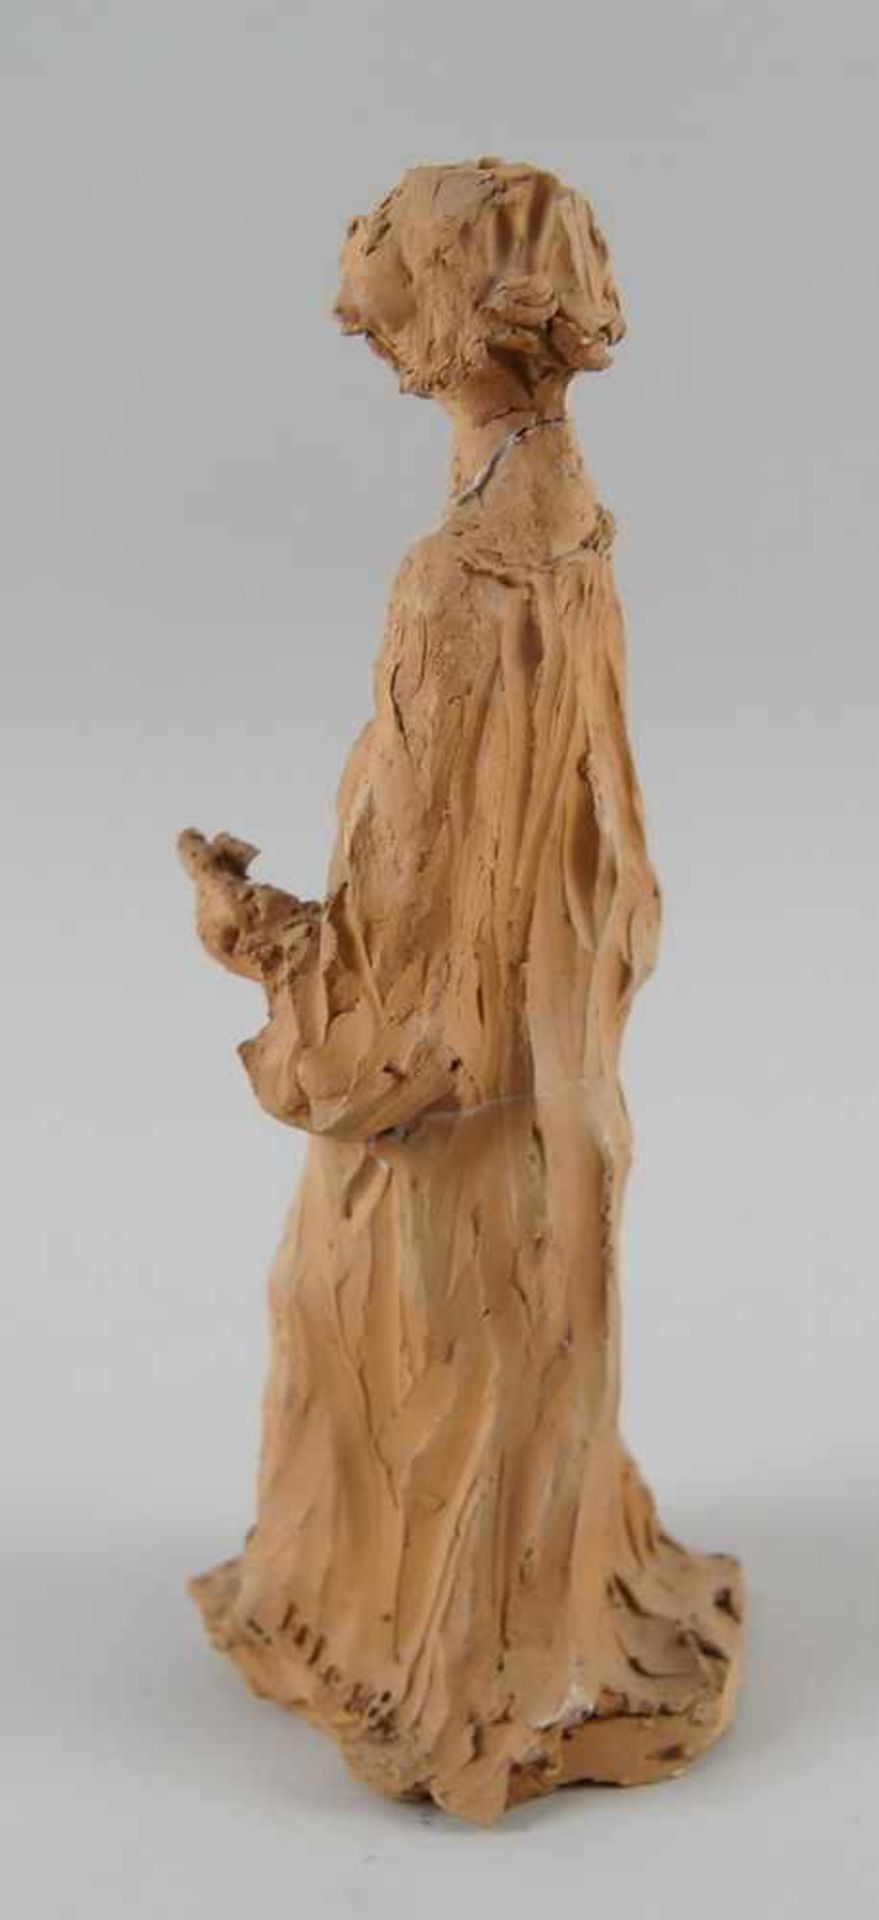 Francesco Messino Skulptur aus Ton, besch., H 25 cm- - -24.00 % buyer's premium on the hammer - Bild 3 aus 7